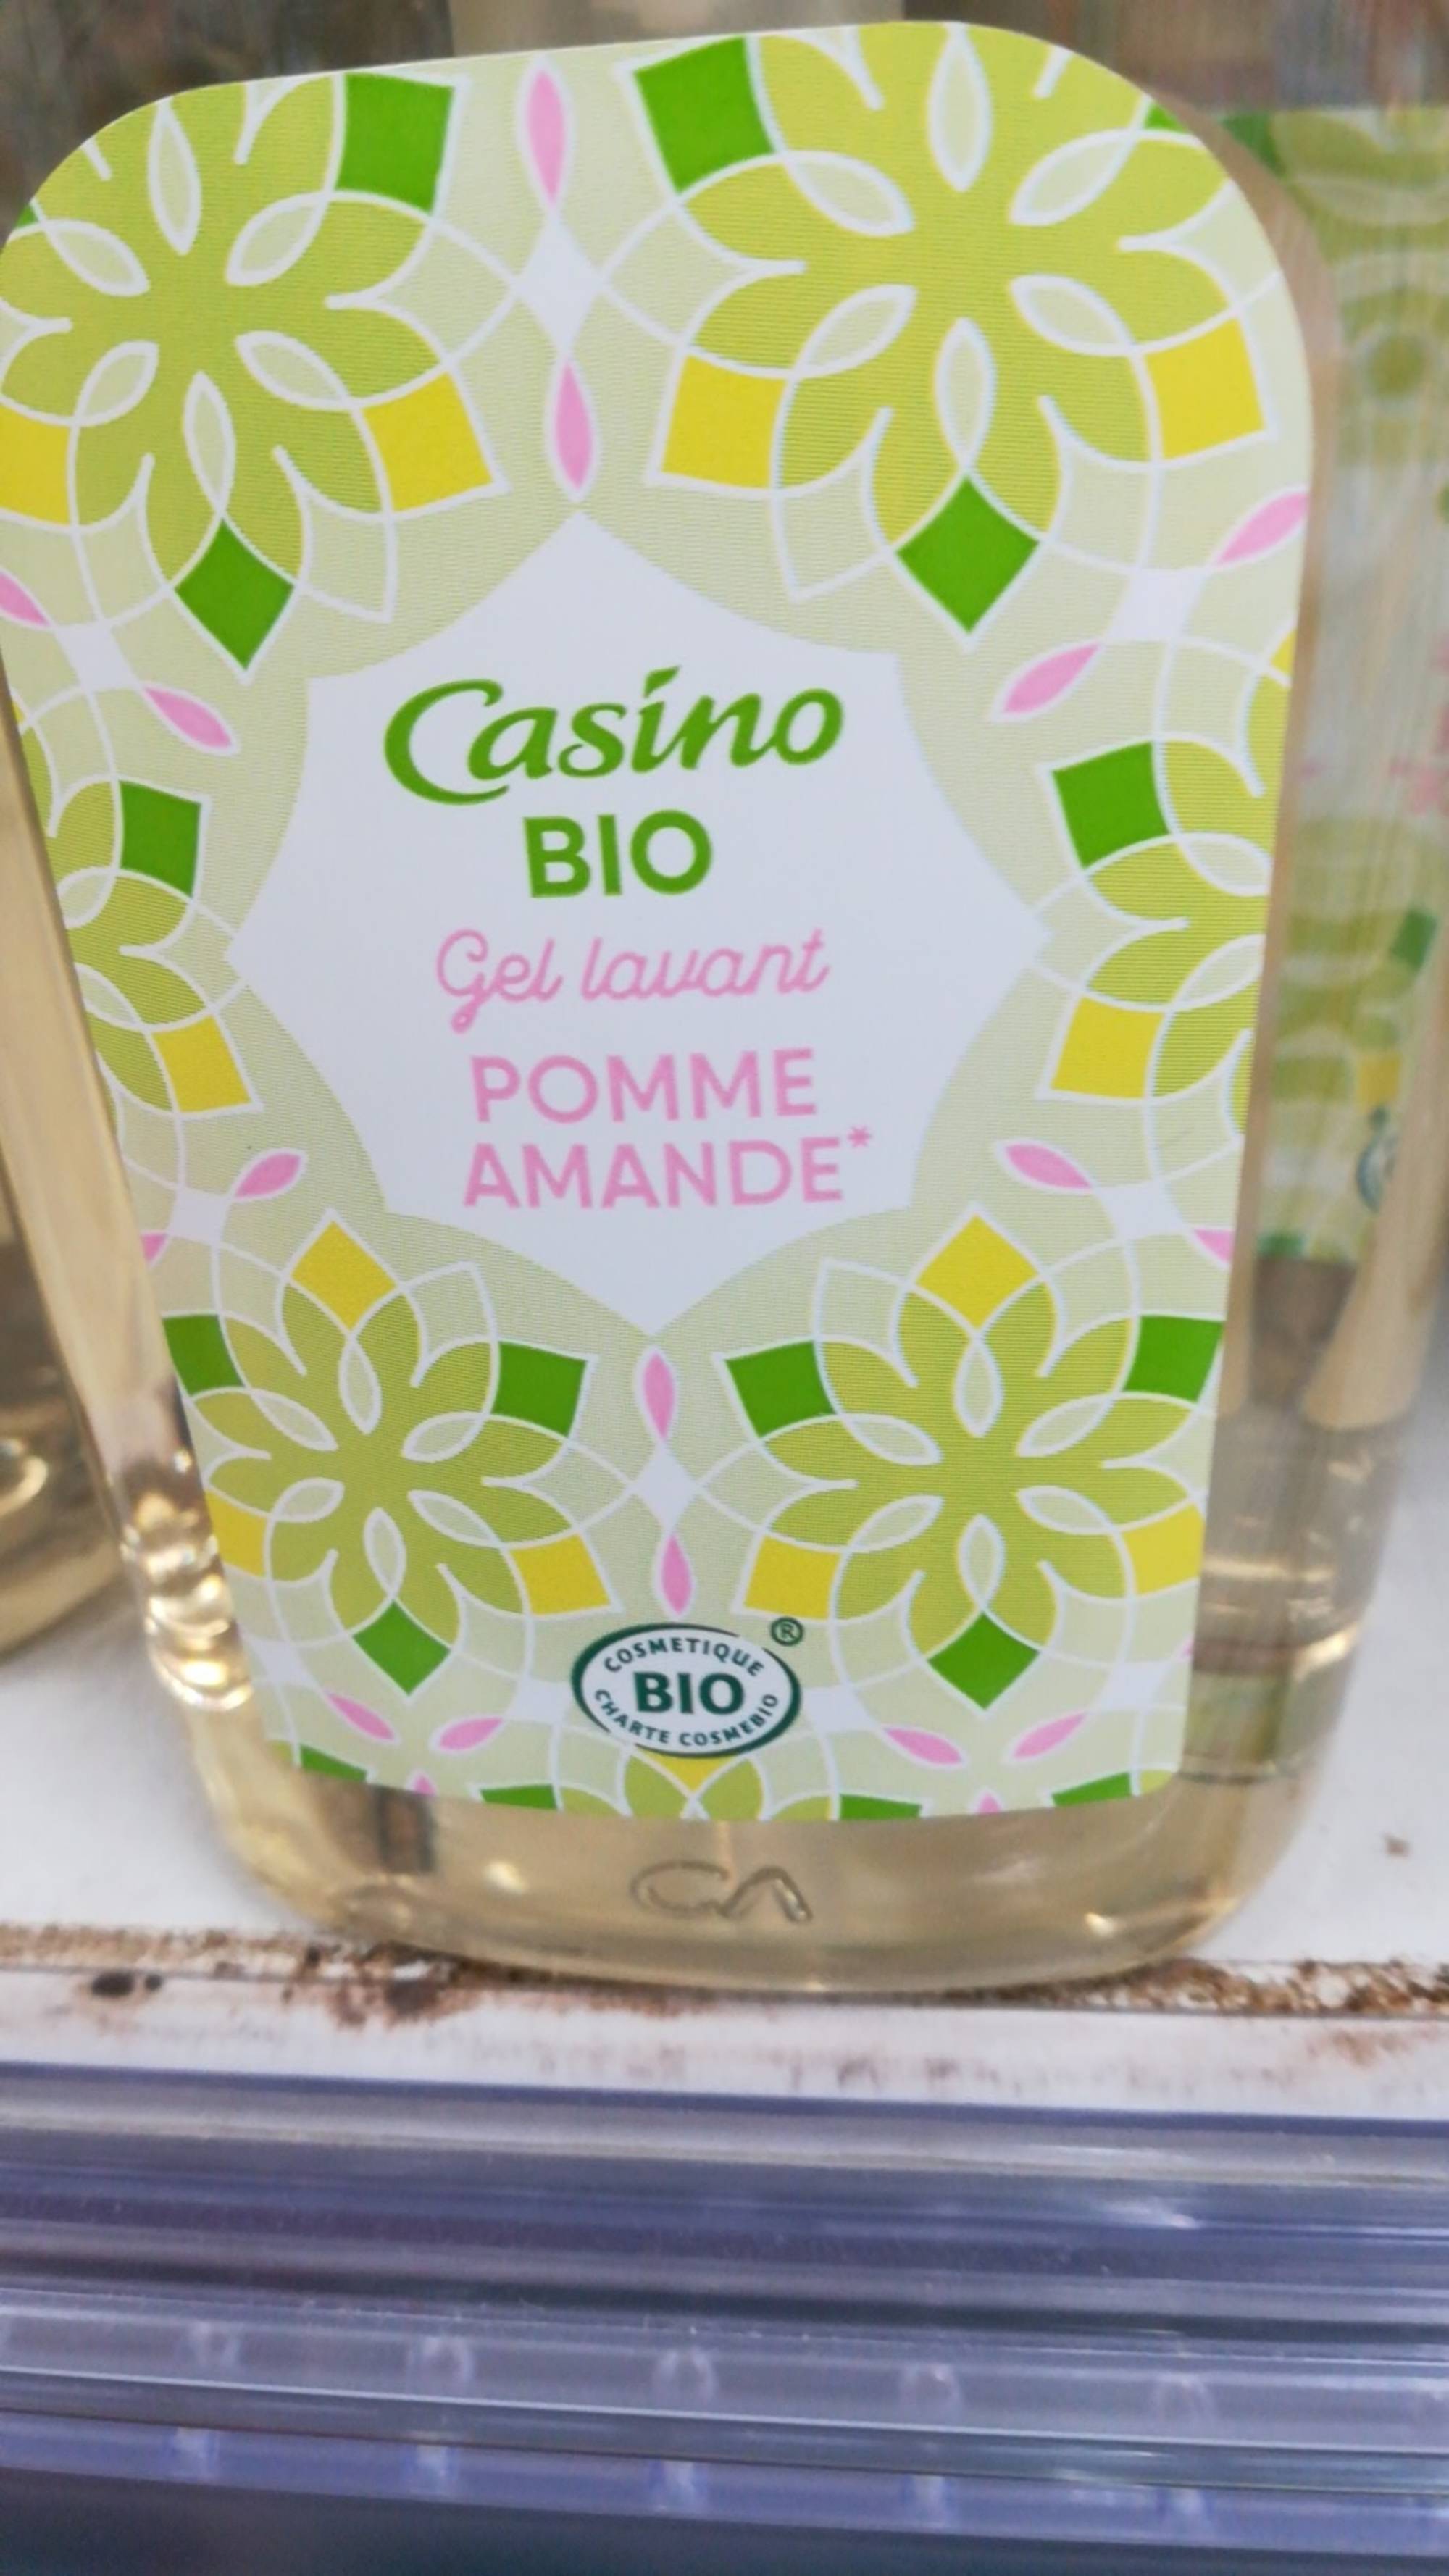 CASINO - Pomme amande bio - Gel lavant mains 